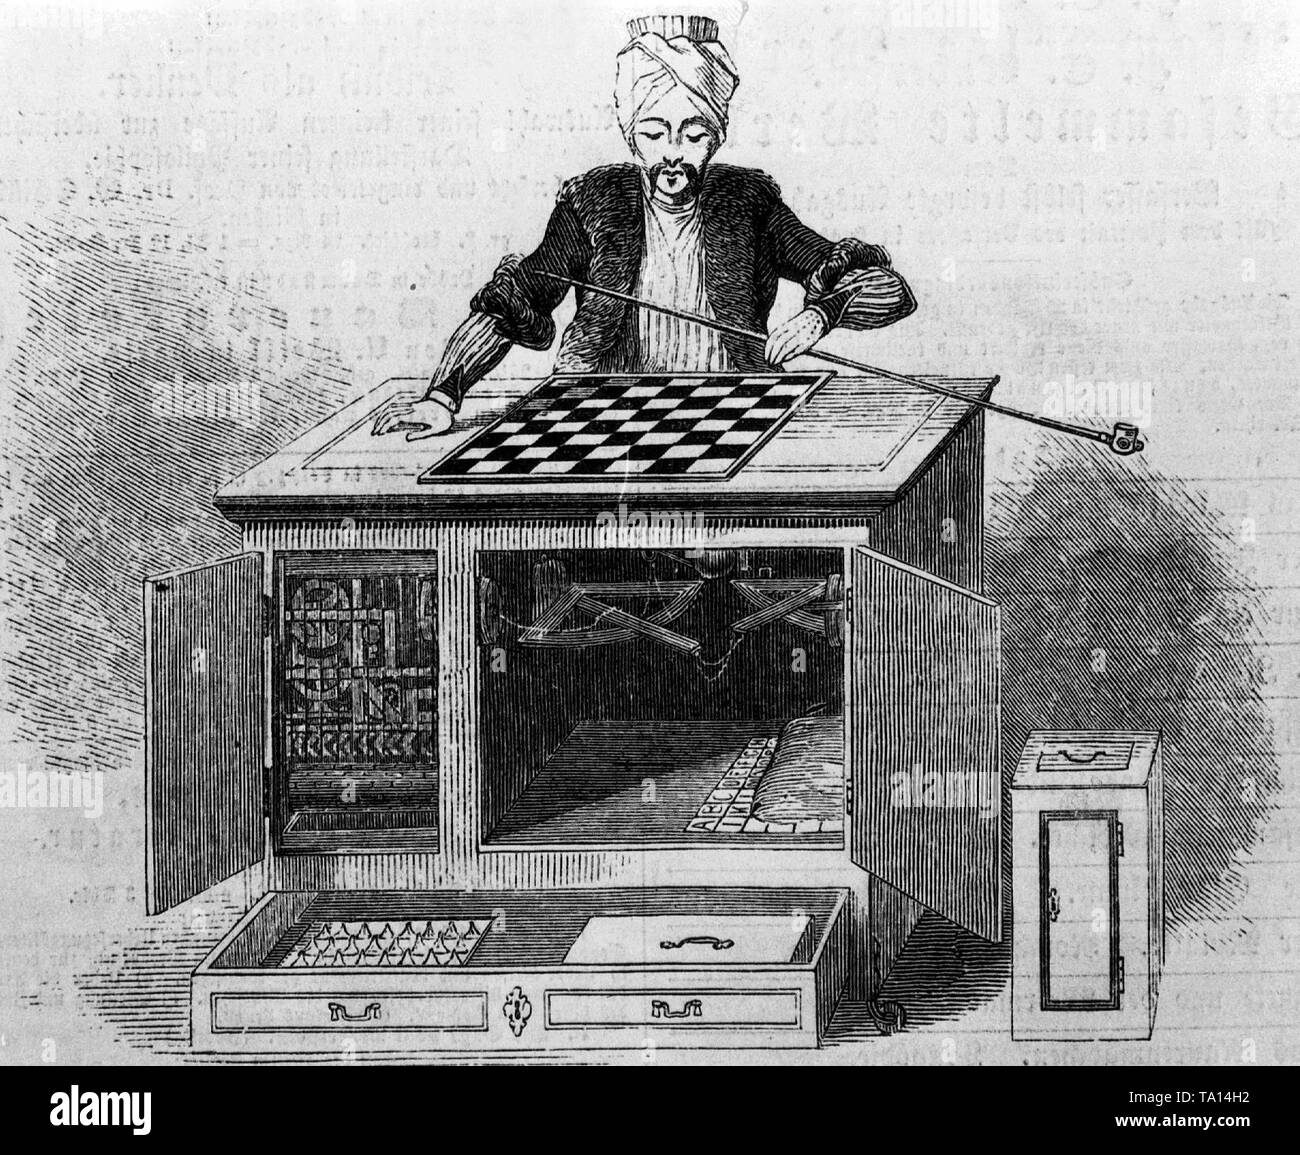 Ein "Chess Machine' von Wolfgang Kempelen in Bratislava gebaut, überrascht und erfreut, alle interessierten Parteien zwischen 1770 und 1810. Der Automat Abbildung eines Turk bewegt die Schachfiguren mit 'anmutigen Bewegungen und Einfallsreichtum. (Napoleon spielte auch gegen ihn - und verloren das Spiel.) Stockfoto